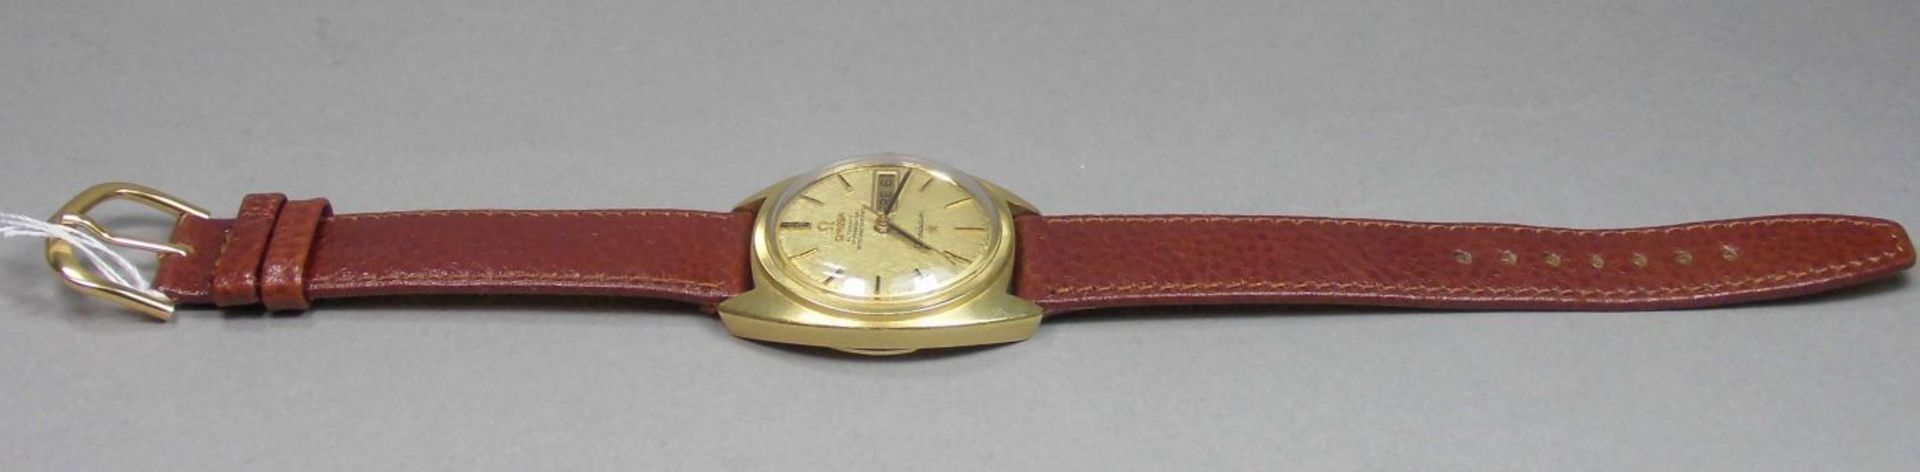 VINTAGE ARMBANDUHR: OMEGA CONSTELLATION / wristwatch, Herstellungsjahr 1968, Automatik-Uhr, - Image 4 of 11